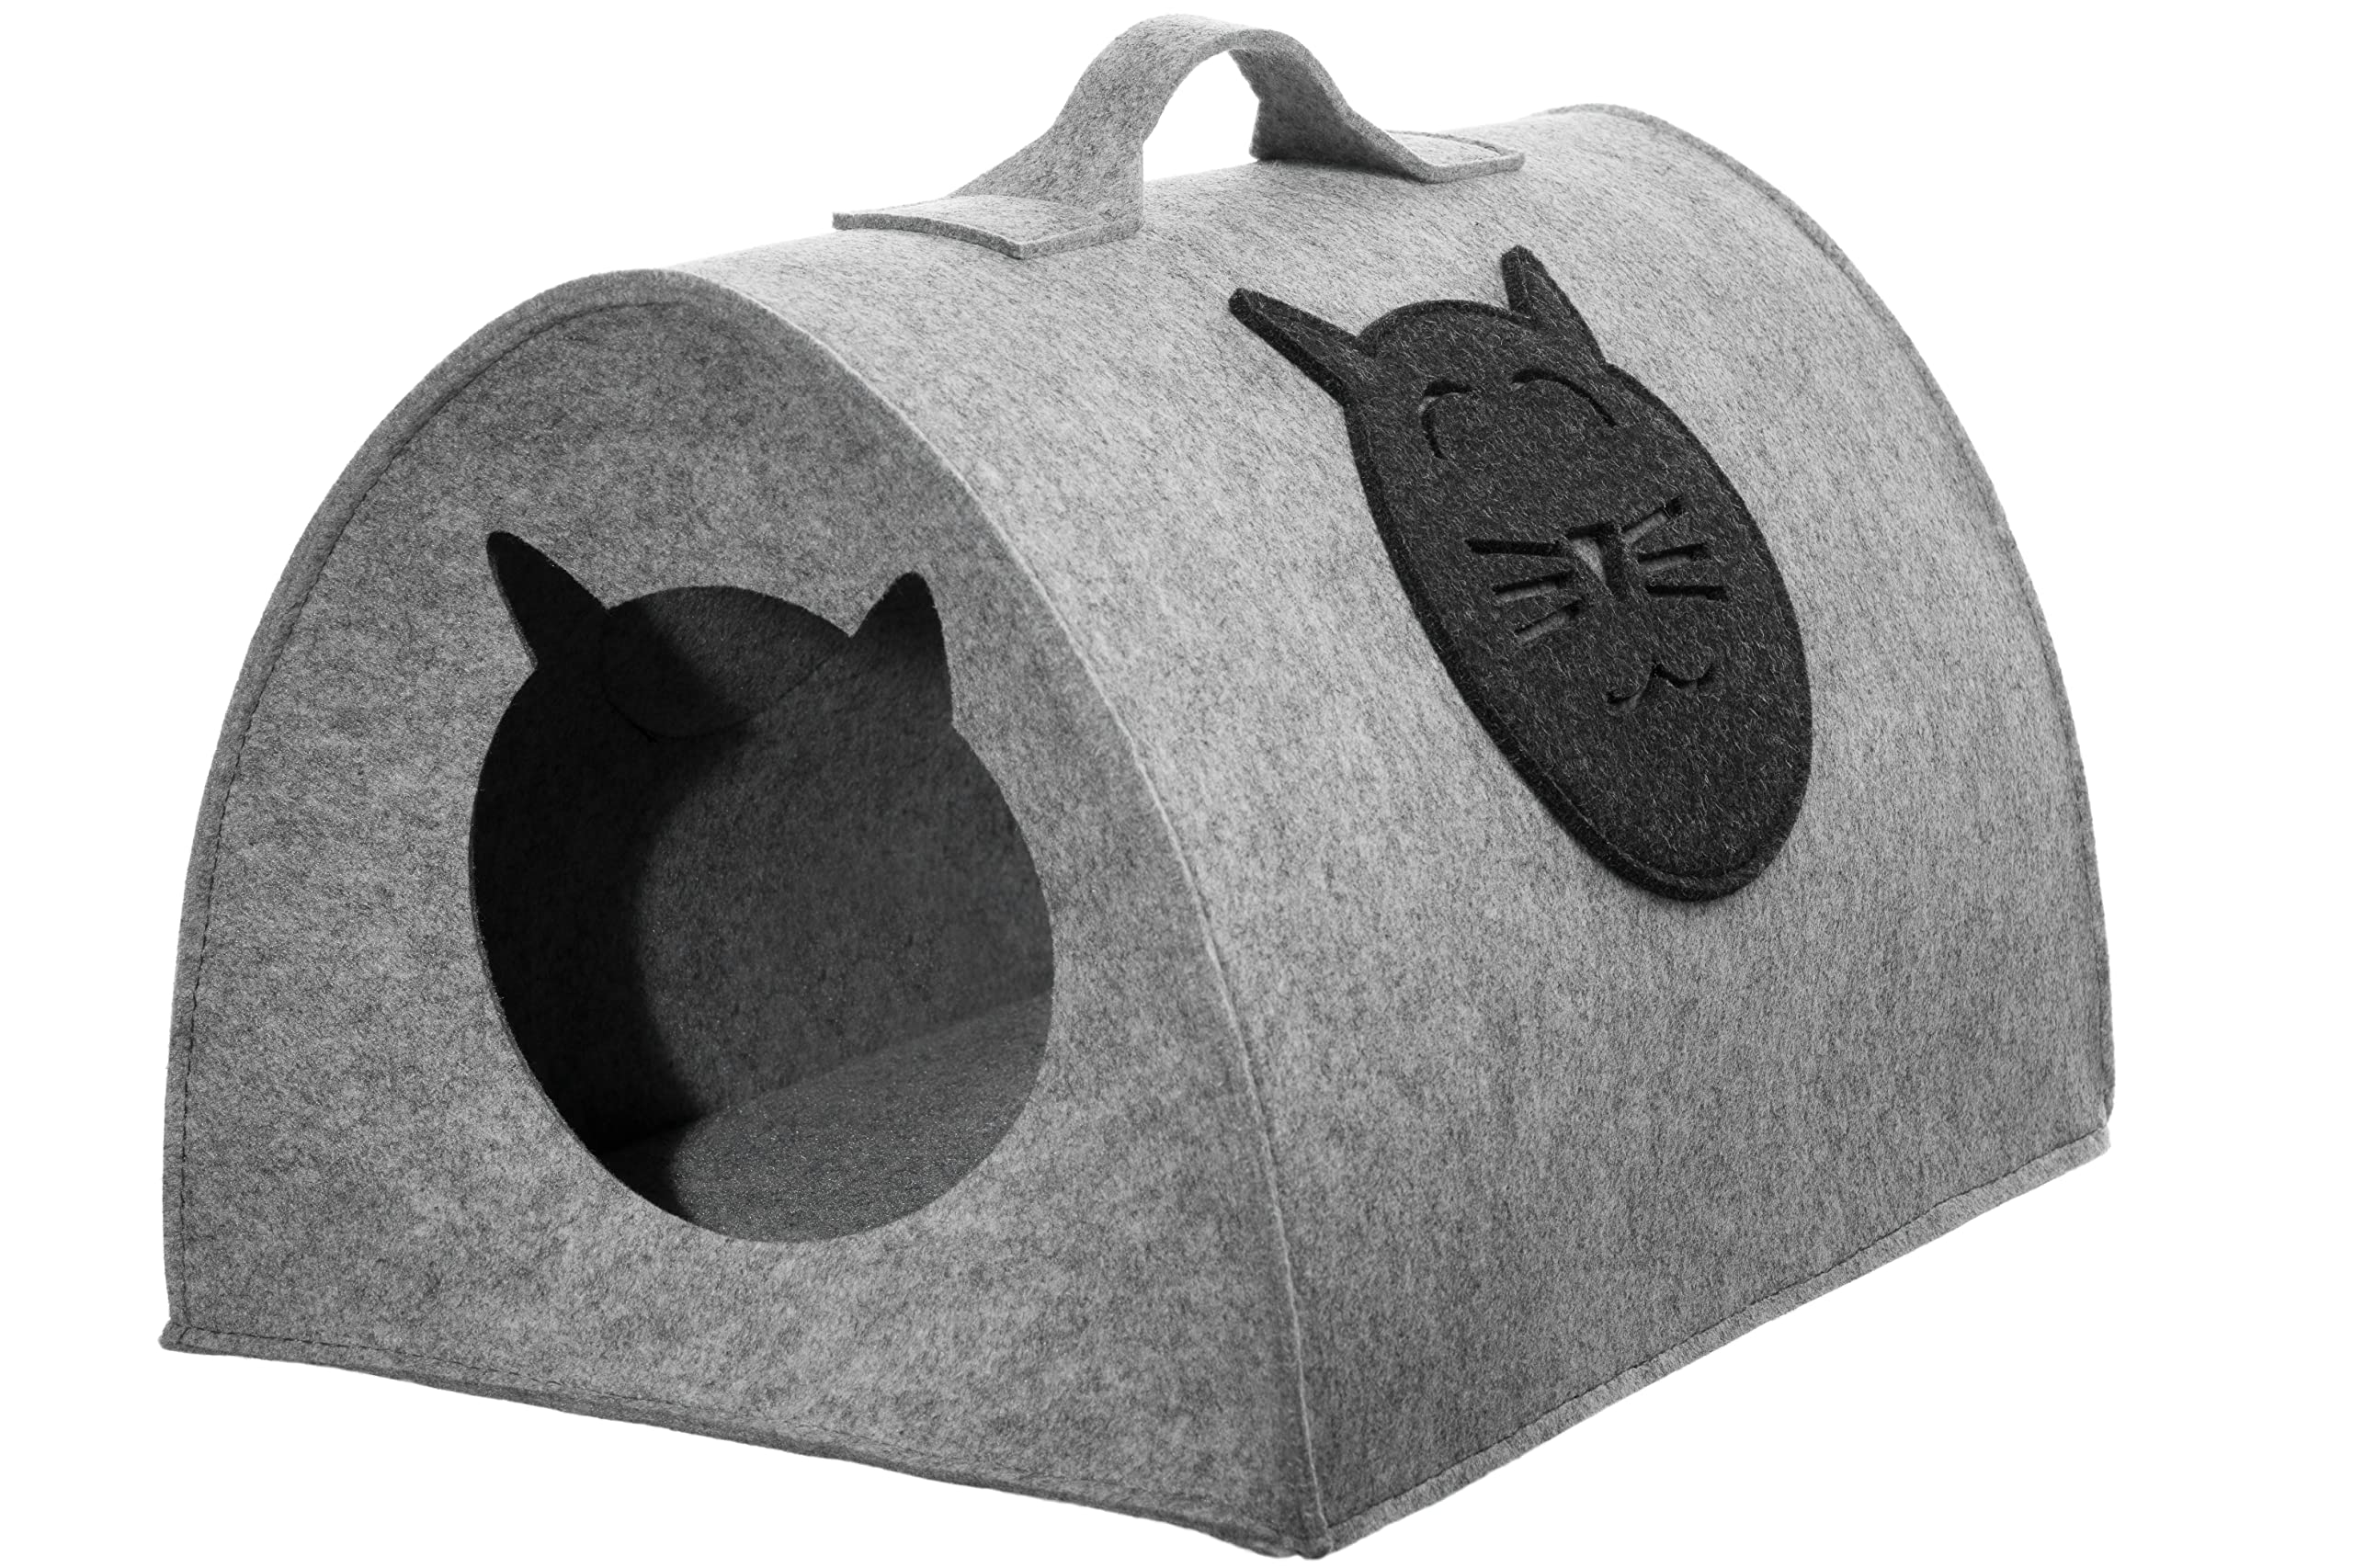 Filz Katzenhöhle Spielzeug – Faltbare Kuschelhöhle Schlafplatz für Katzen zum Schlafen, Verstecken, Toben und Kratzen (L)